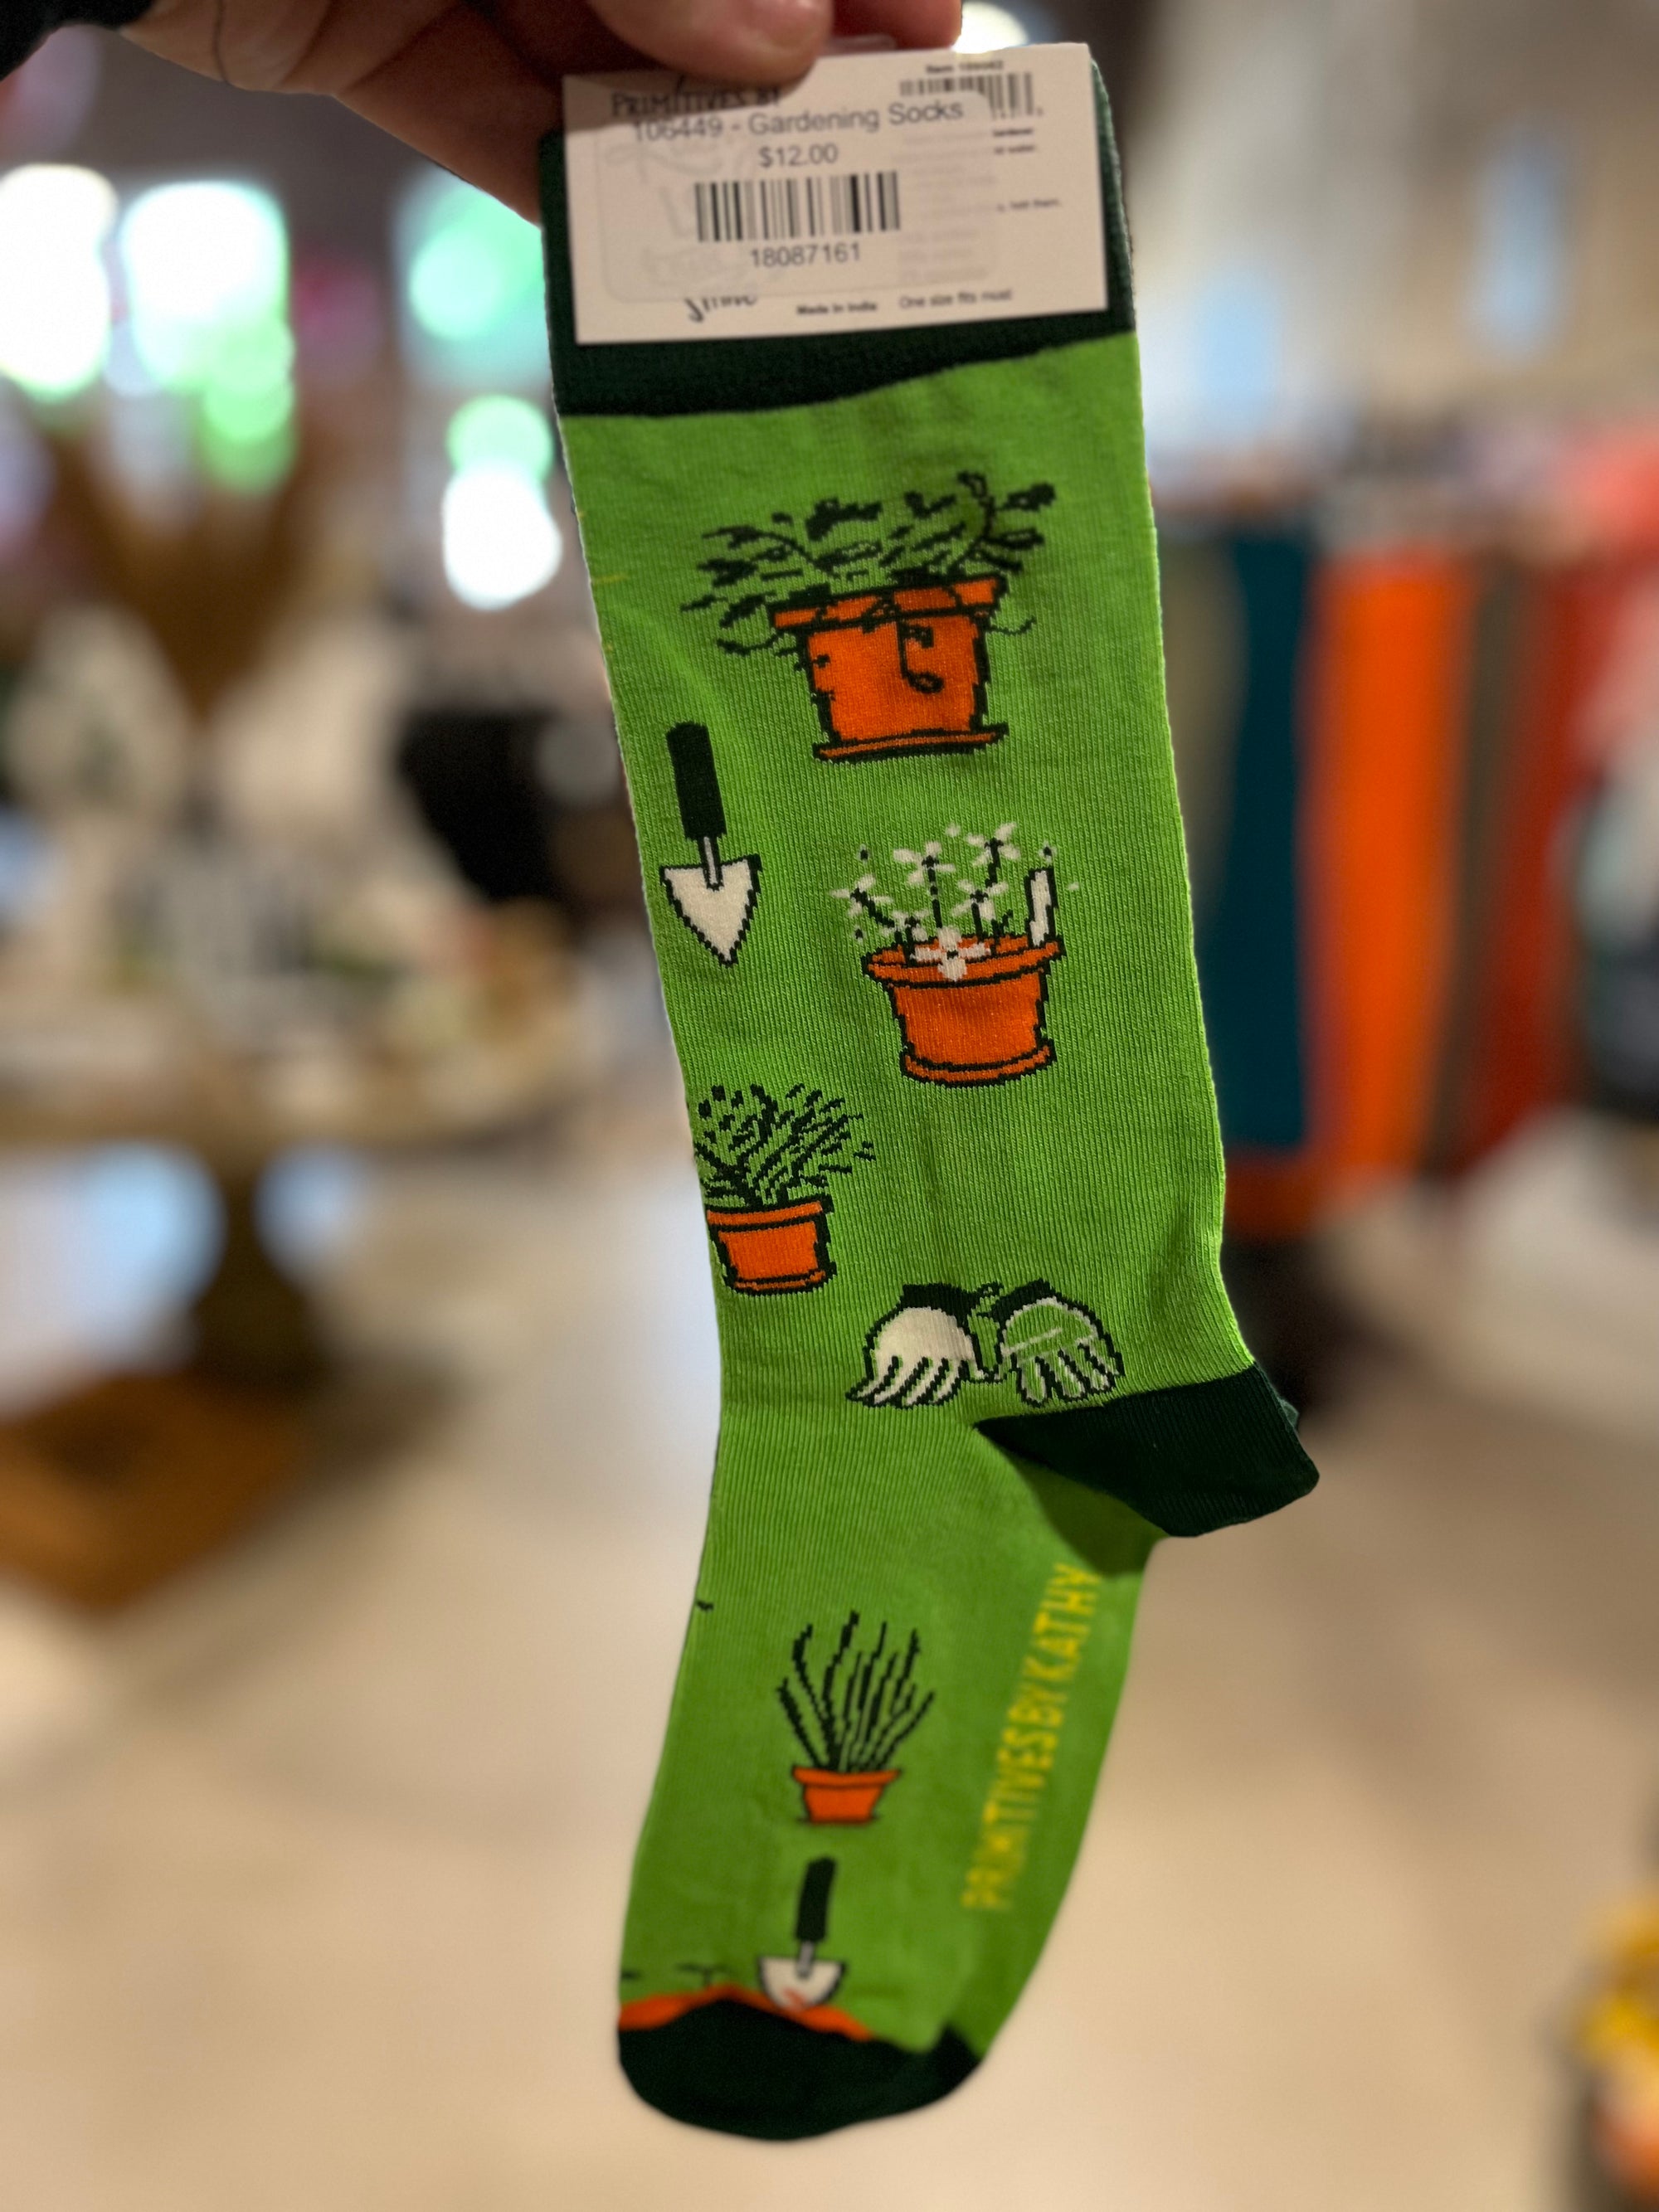 Awesome Gardener Socks